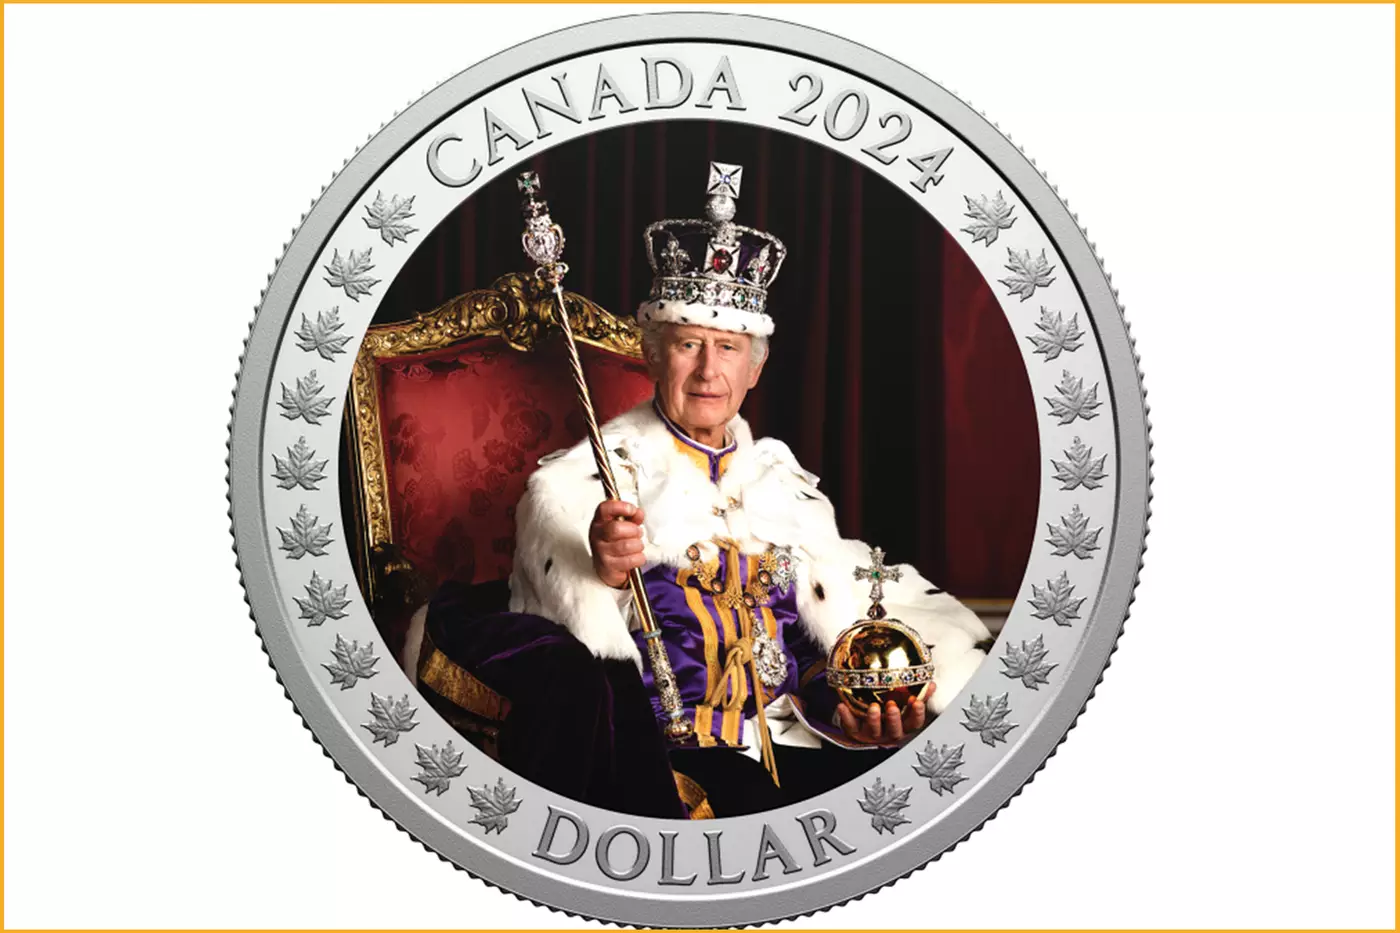 ضرابخانه سلطنتی کانادا به تازگی از یک سکه کلکسیونی رونمایی کرده. این سکه به مناسبت سالگرد تاجگذاری کینگ چارلز ضرب شده است.